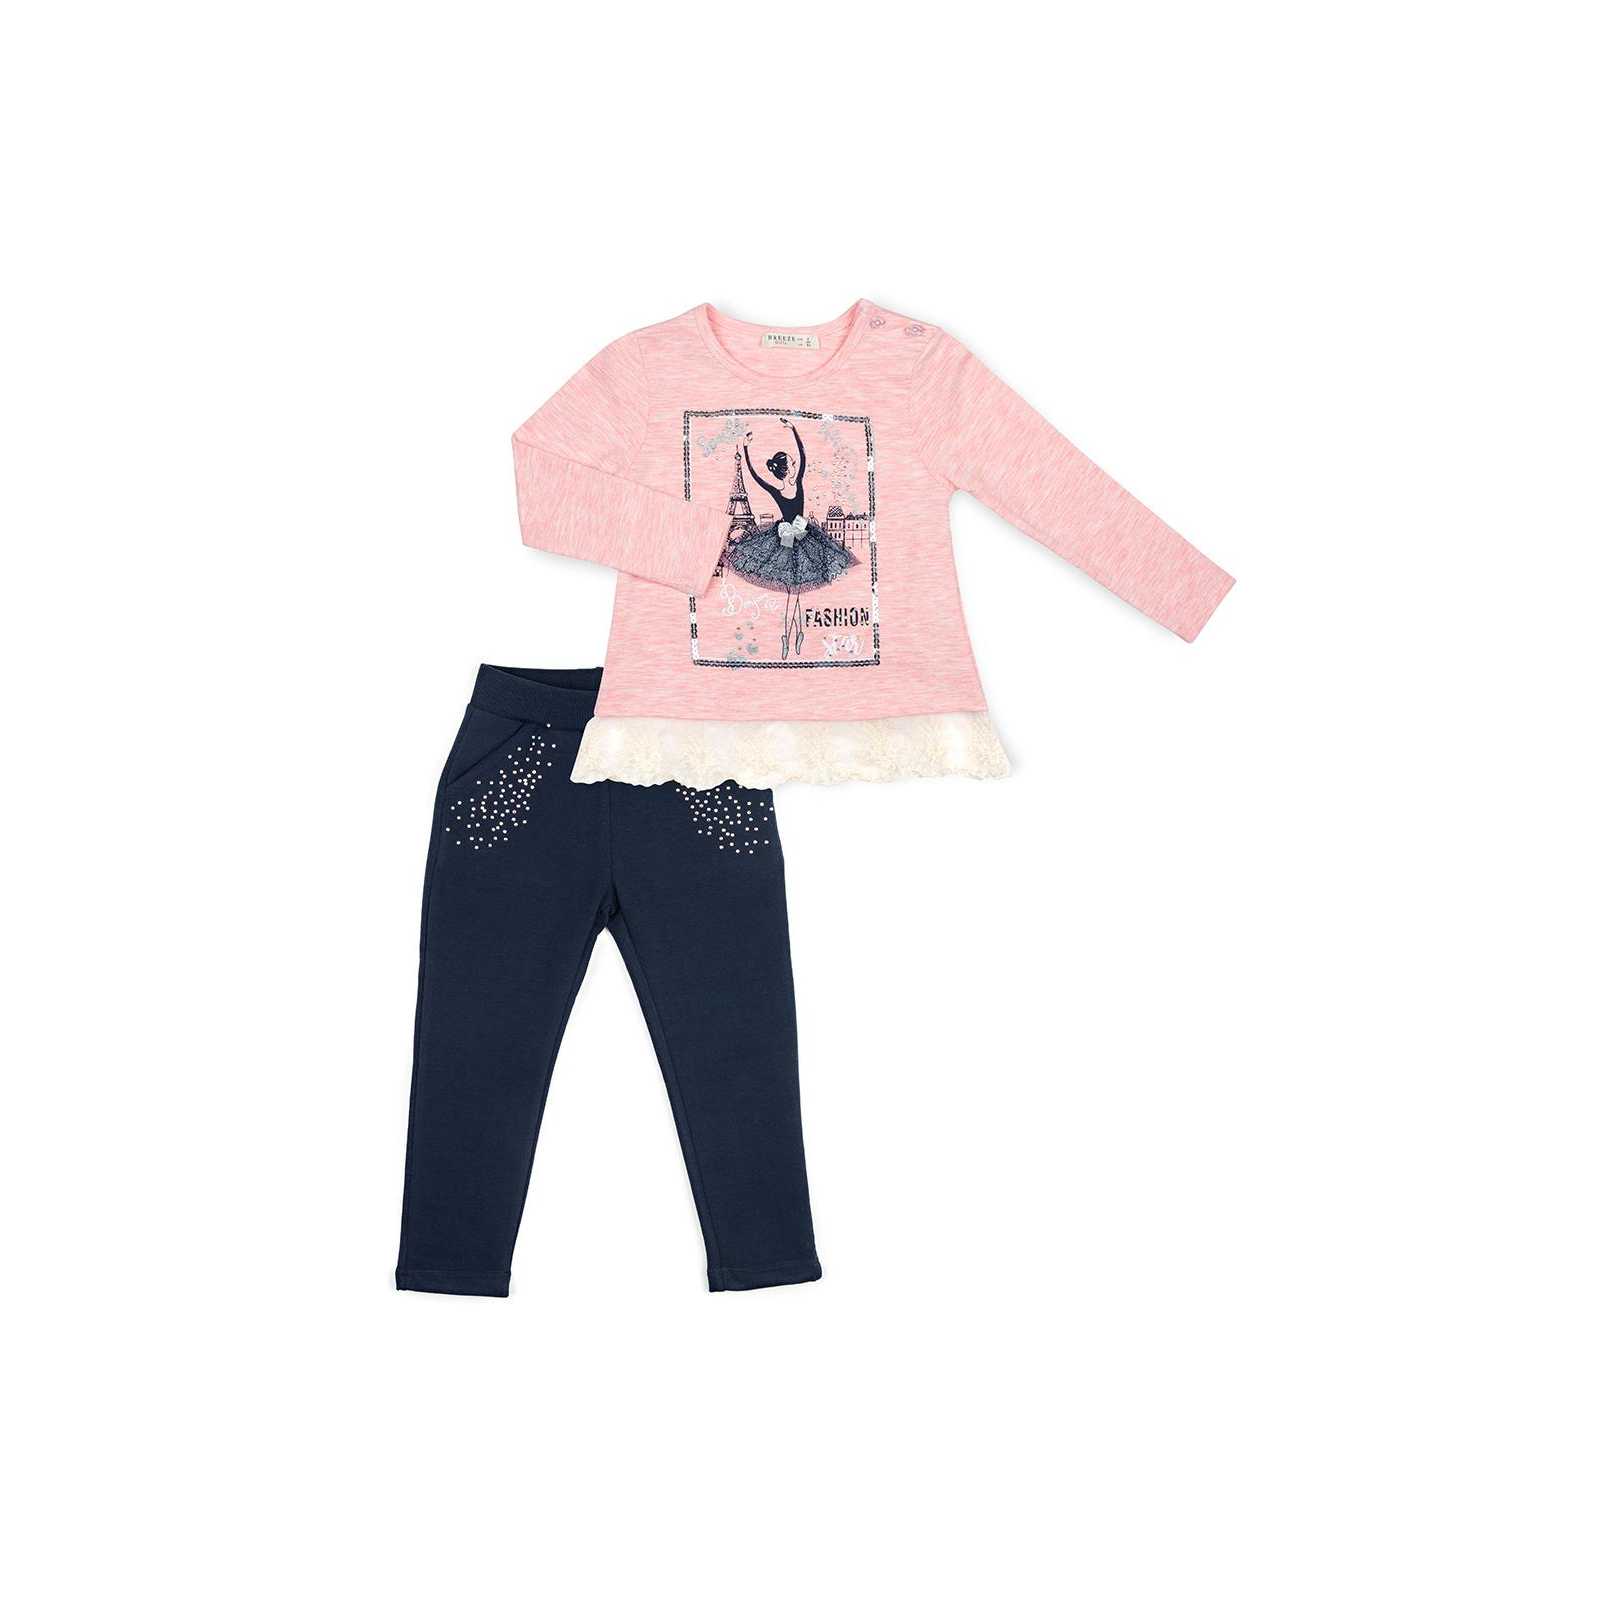 Набор детской одежды Breeze с балеринкой (10382-110G-pink)